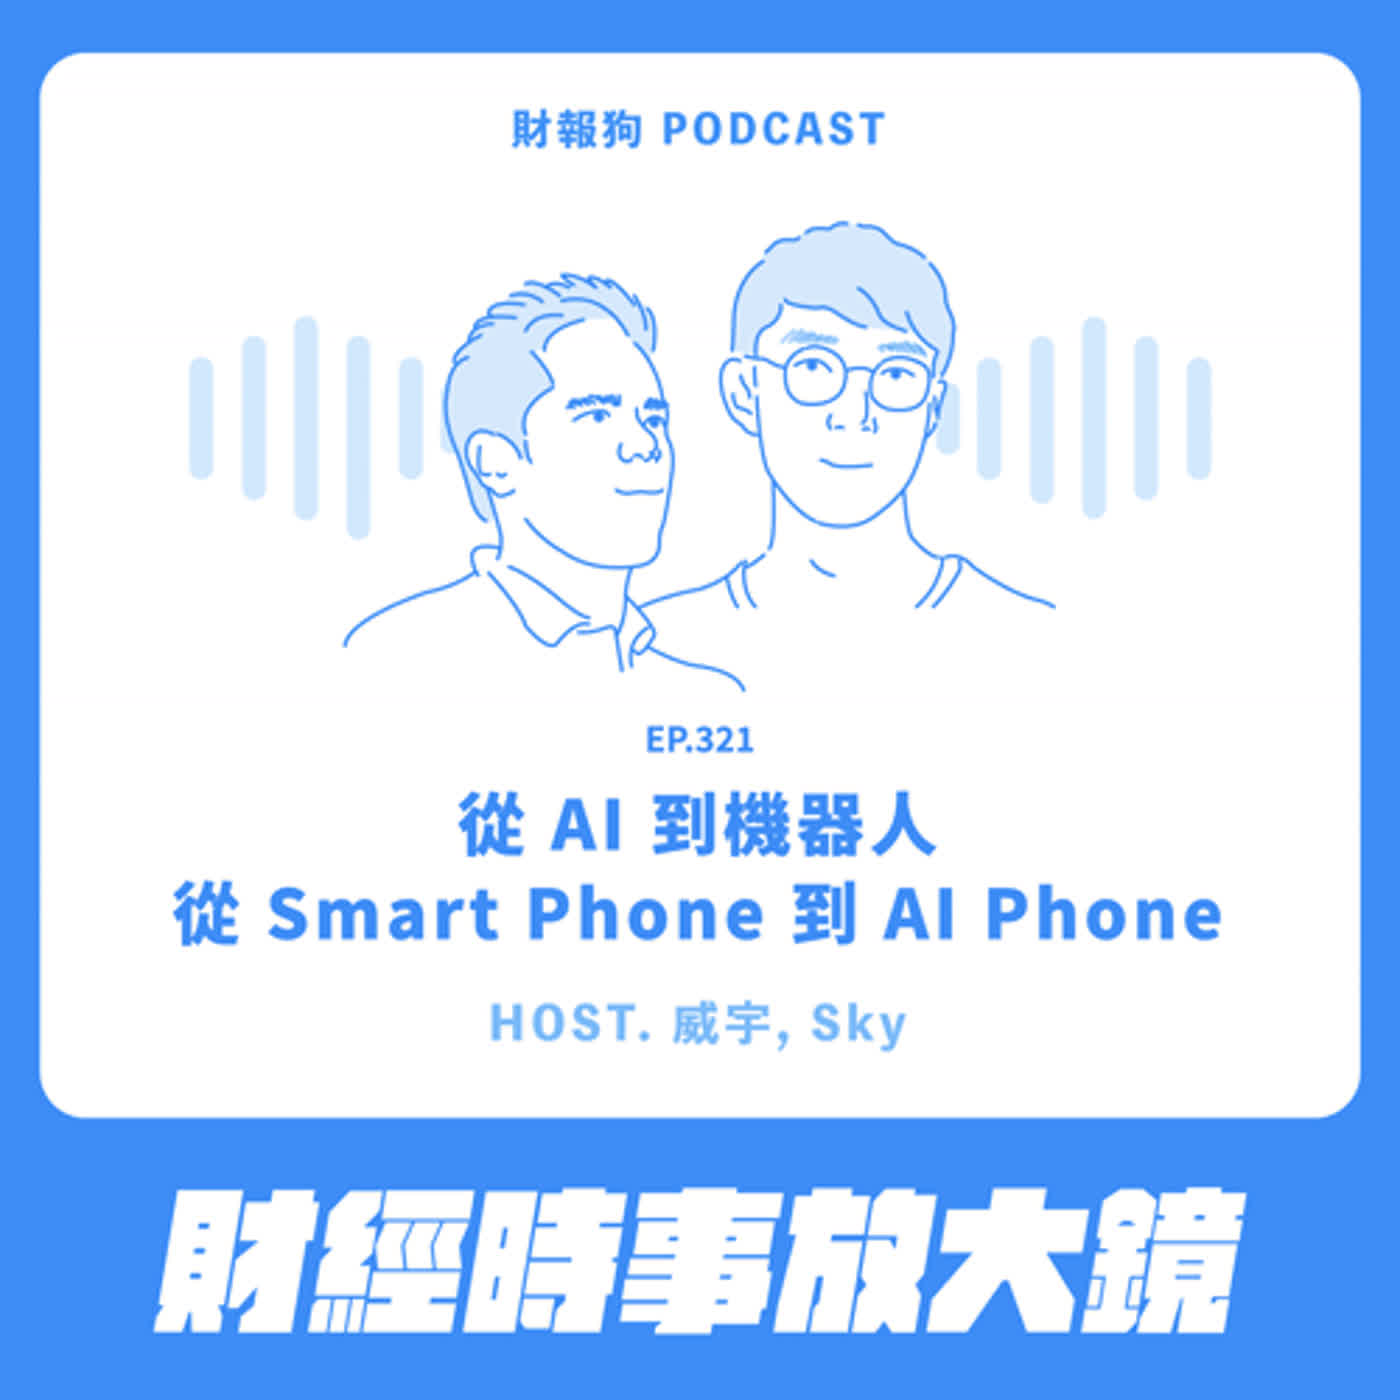 321.【財經時事放大鏡】從 AI 到機器人；從 Smart Phone 到 AI Phone